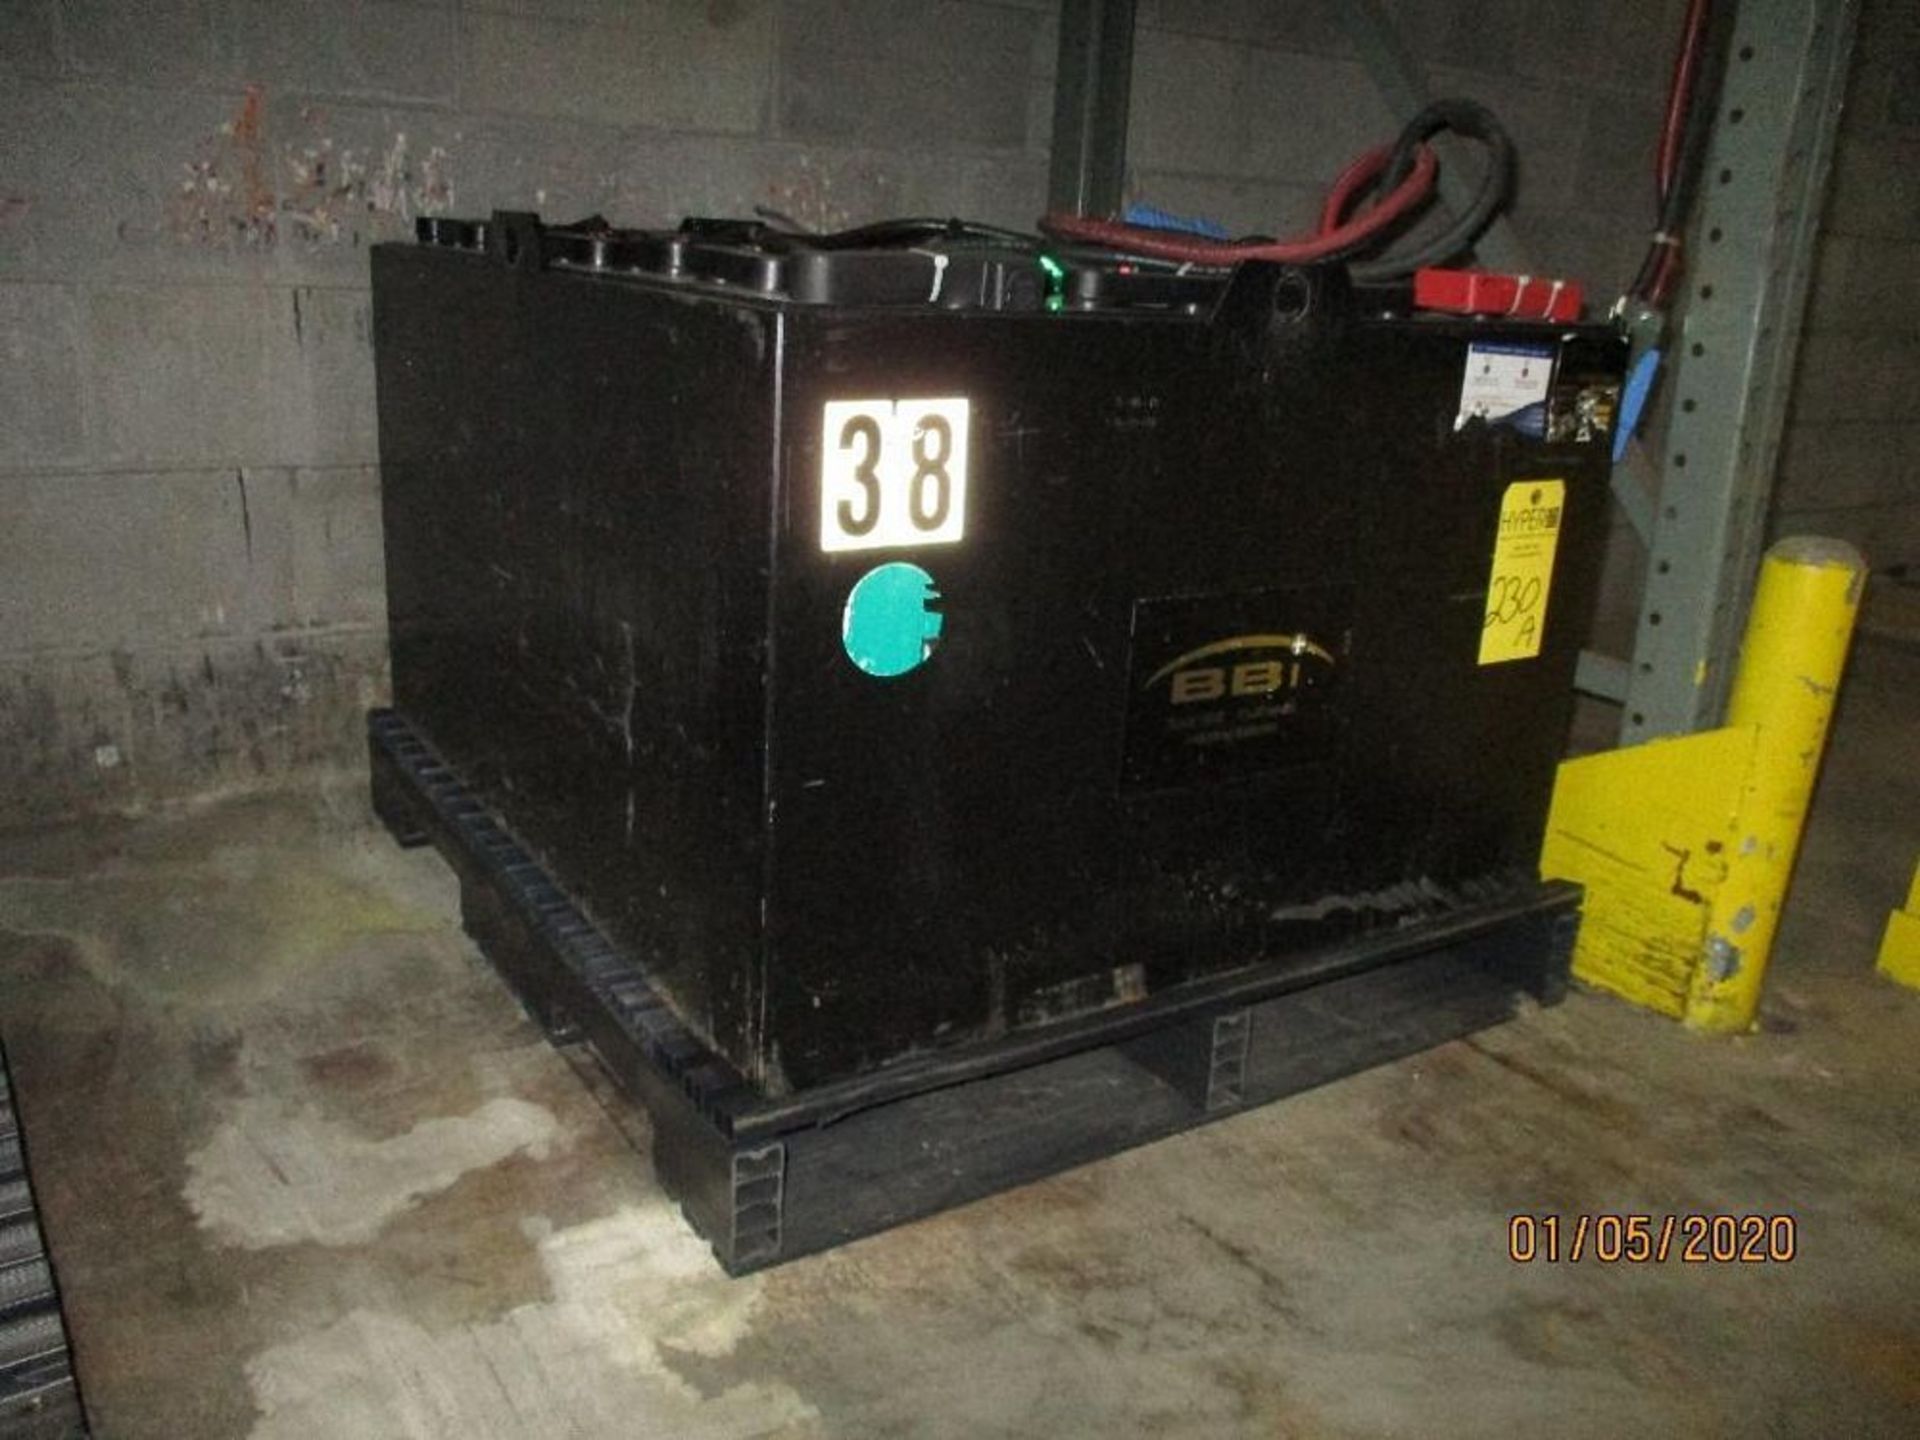 B.B.I. Forklift Battery (38) 850 Amp Hours, 48v, Type No. 24-035-21-299-B